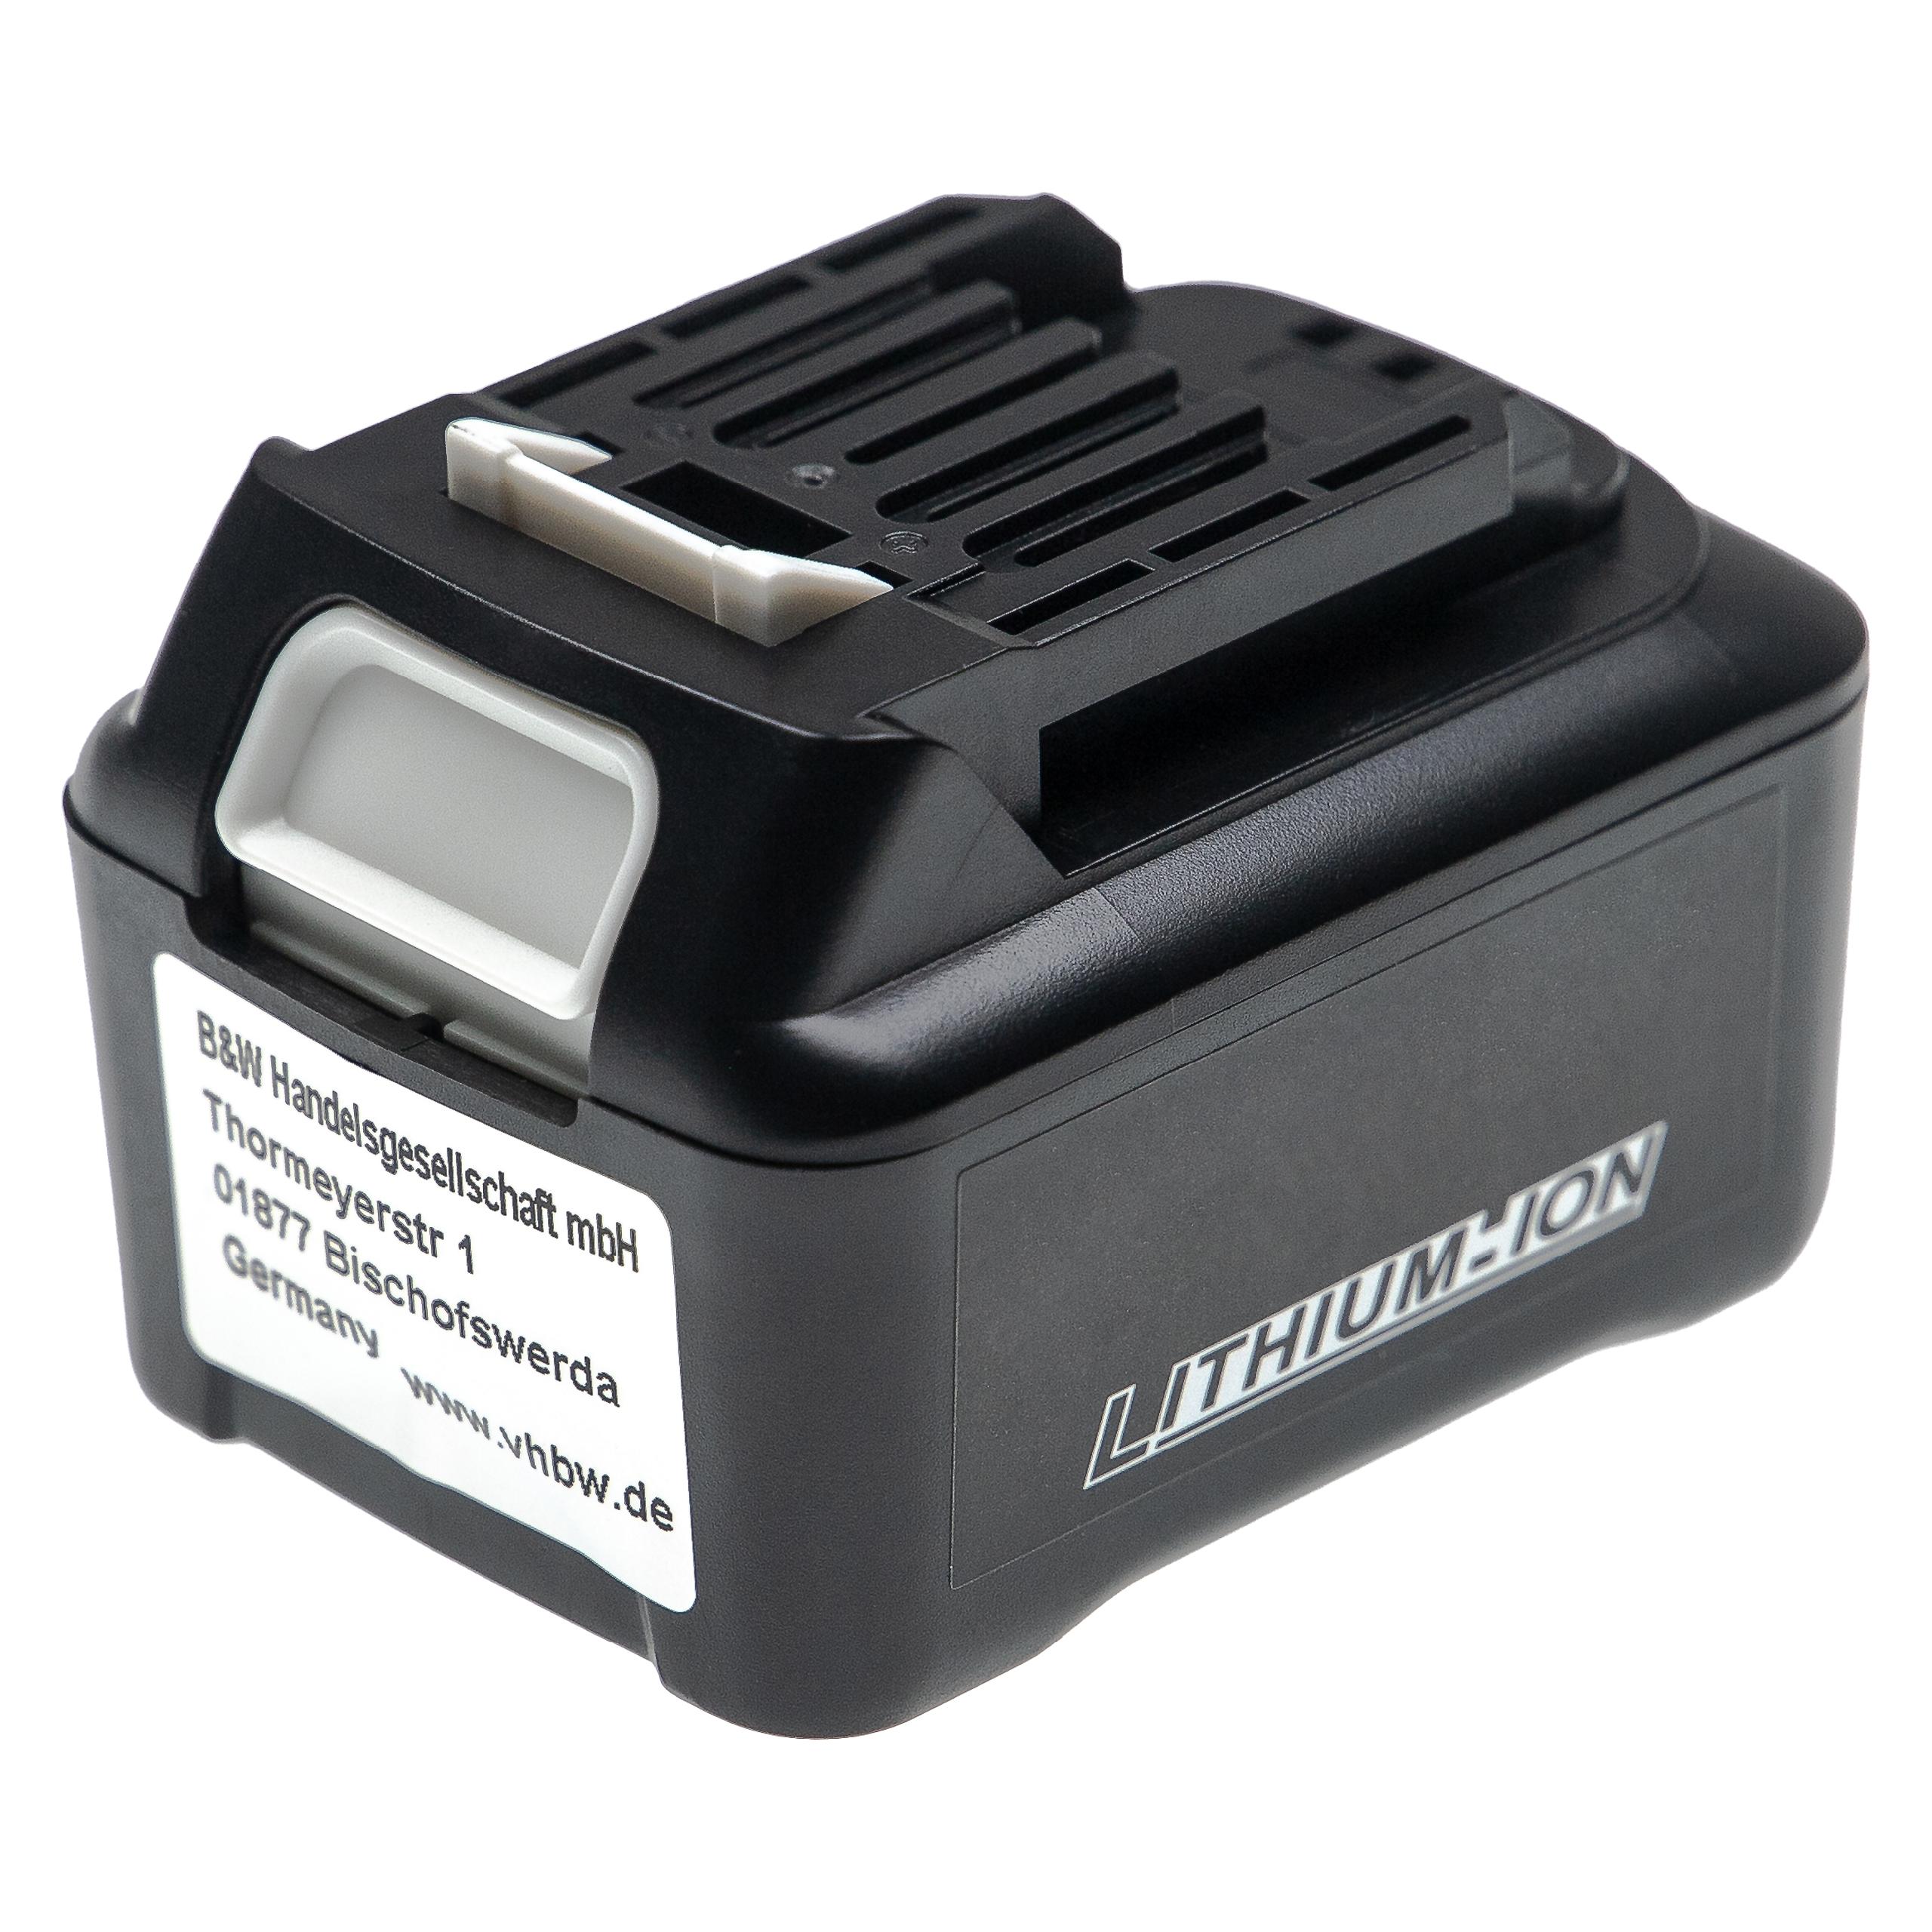 Batterie remplace Makita 197396-9, 197402-0, 197390-1, 197394-3 pour outil électrique - 4000 mAh, 12 V, Li-ion